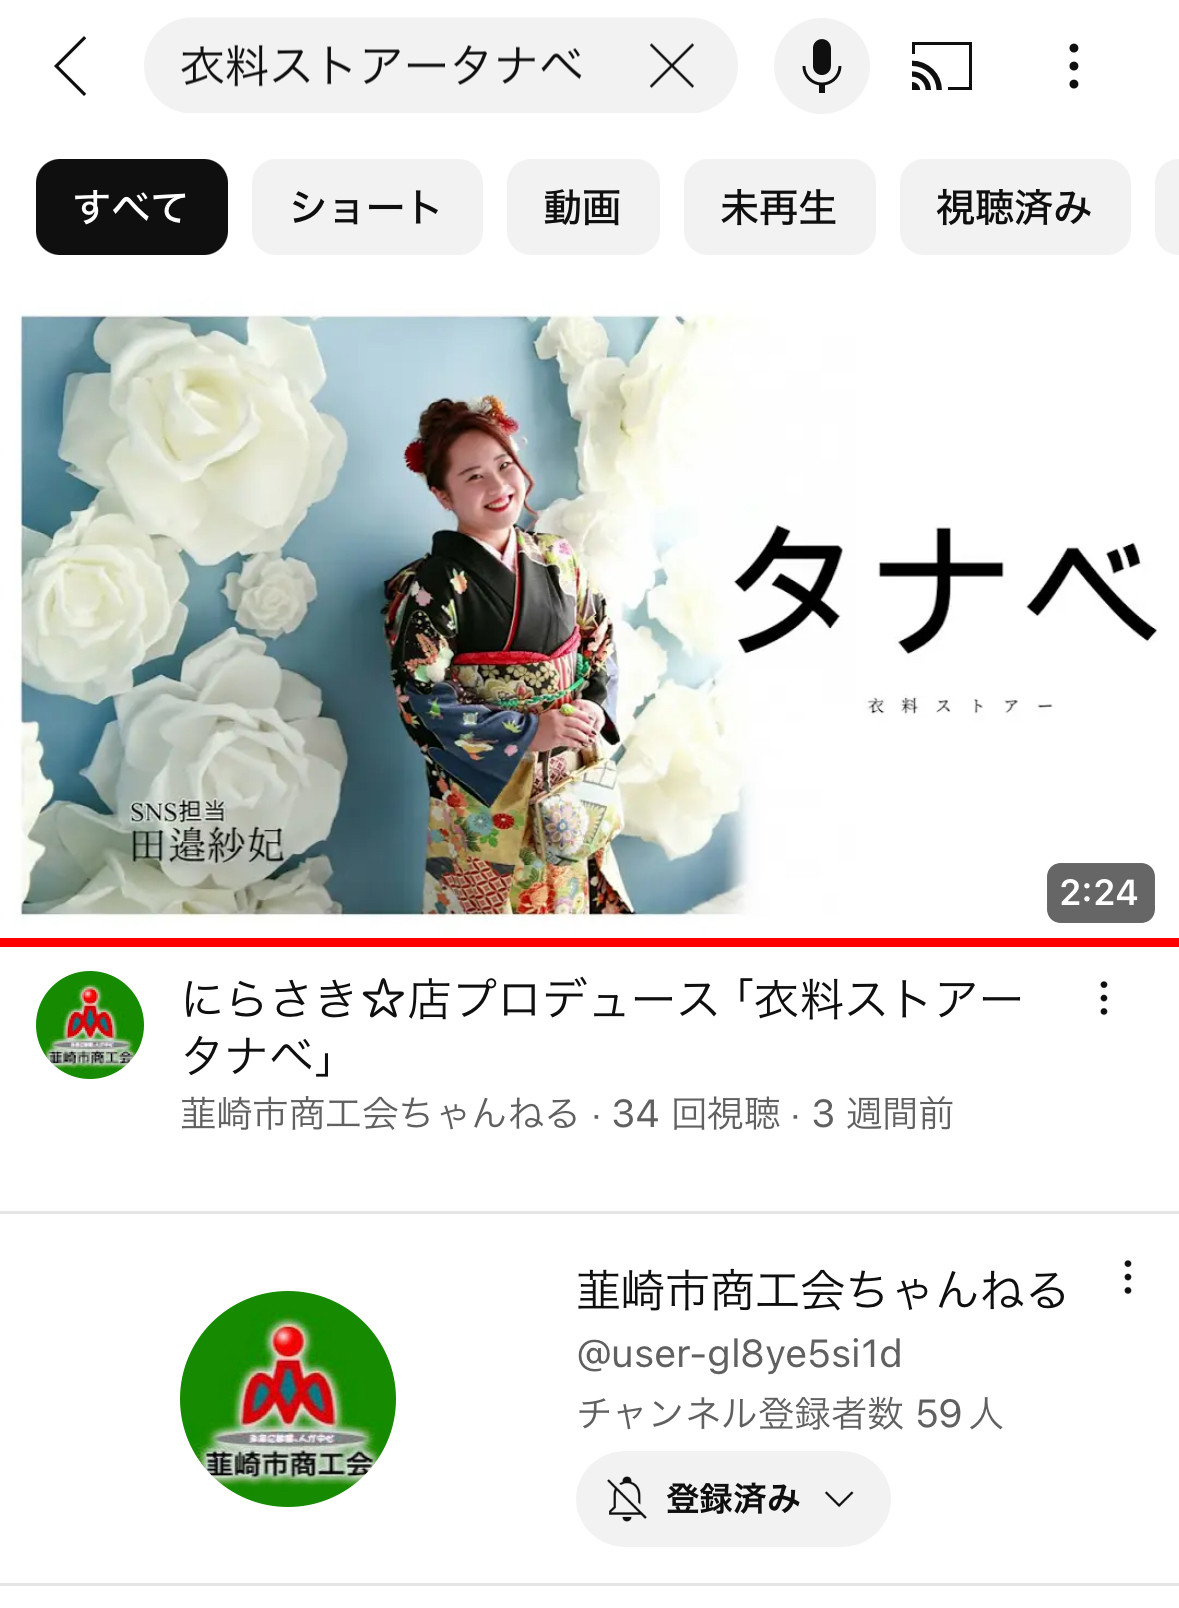 韮崎市商工会ちゃんねる YouTubeで当店が紹介されました！